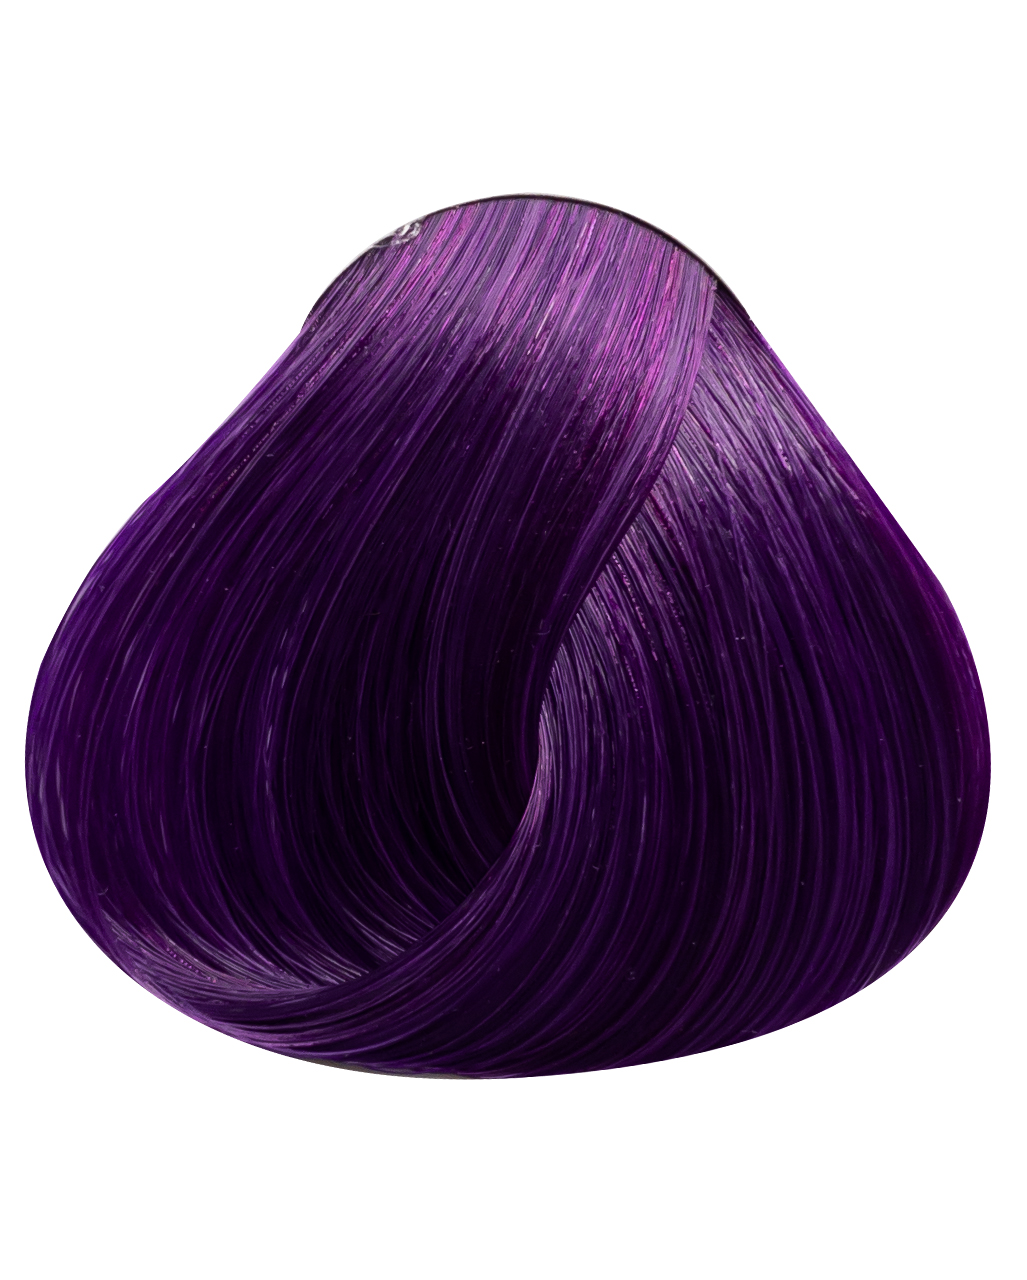 Violett Directions -Violette Haartönung-lila Haare